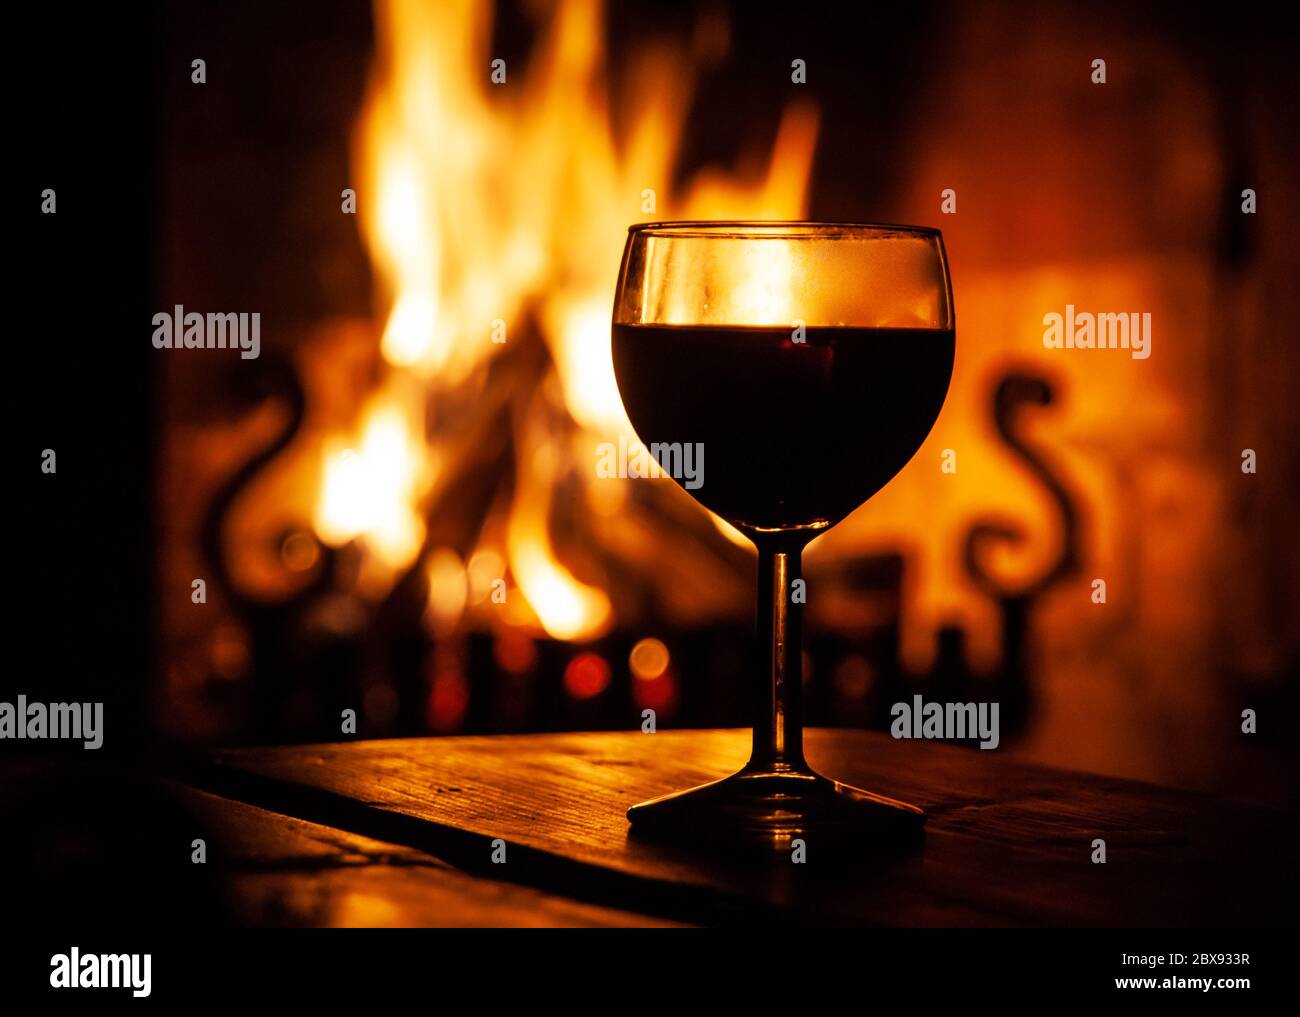 Glas Rotwein auf dem Holztisch mit brennendem Feuer im Hintergrund. Abends entspannen Sie sich an einem gemütlichen Ort. Dunkle mittelalterliche Weingüter. Stockfoto